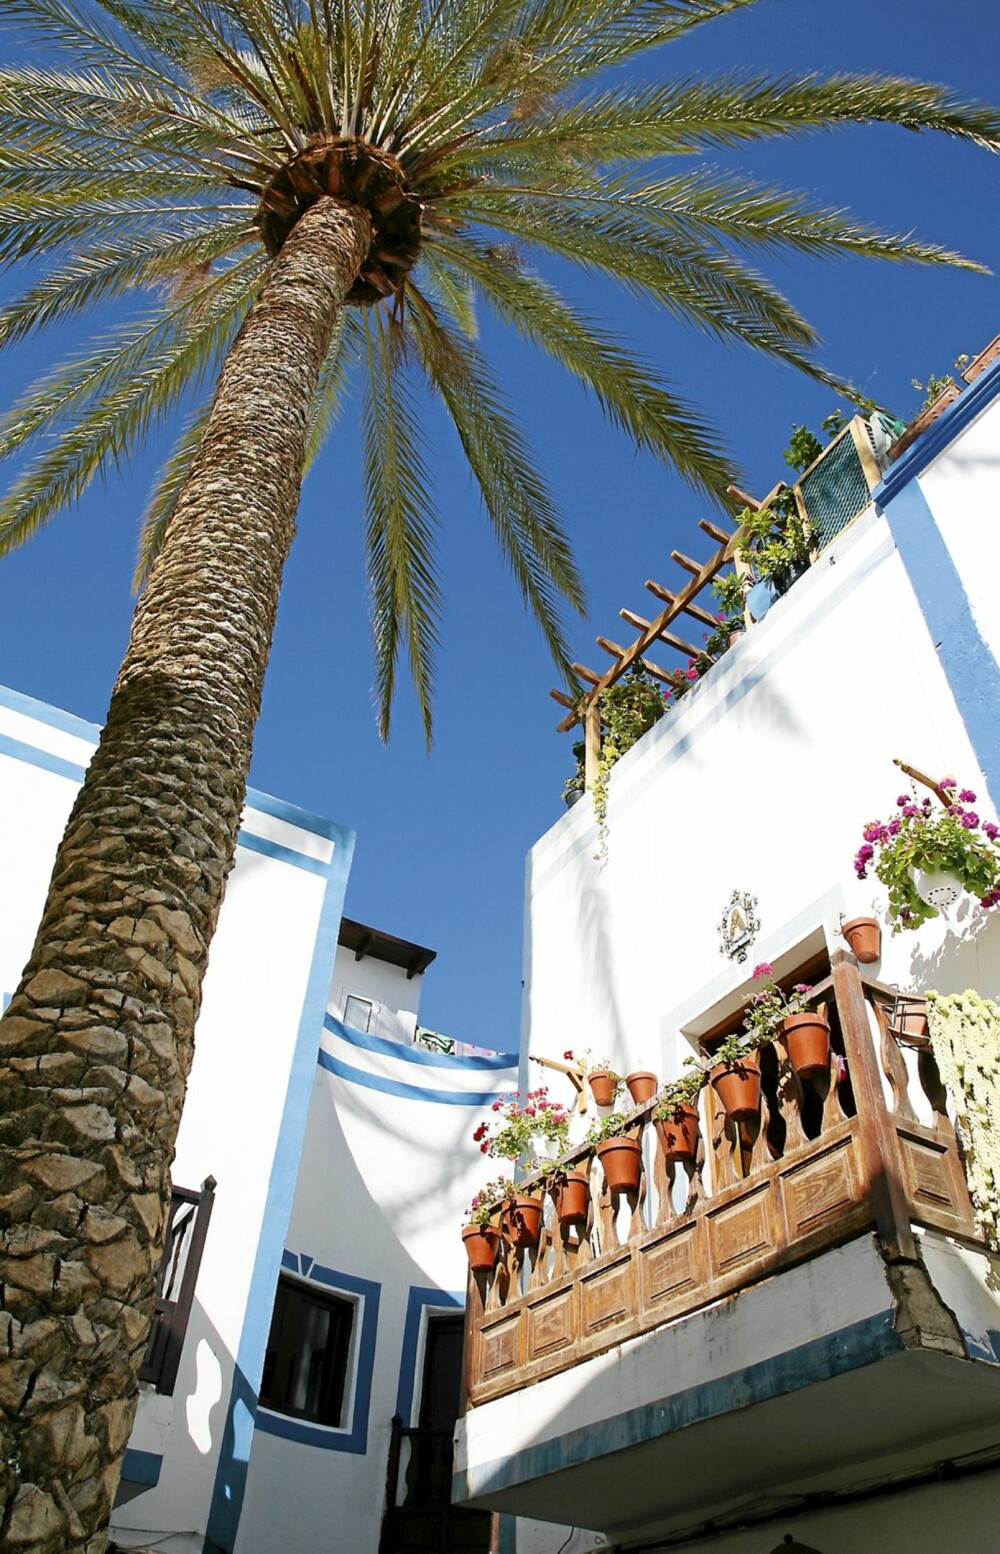 VERDT Å UTFORSKE: Gran Canaria er mer enn solfylte strender. Kom deg opp av solstolen og dra på oppdagelsesferd til gamle vingårder, romantiske småbyer og markeder. Tipsene finner du i «Gran Canaria — 53 opplevelser», utgitt på Skald forlag.